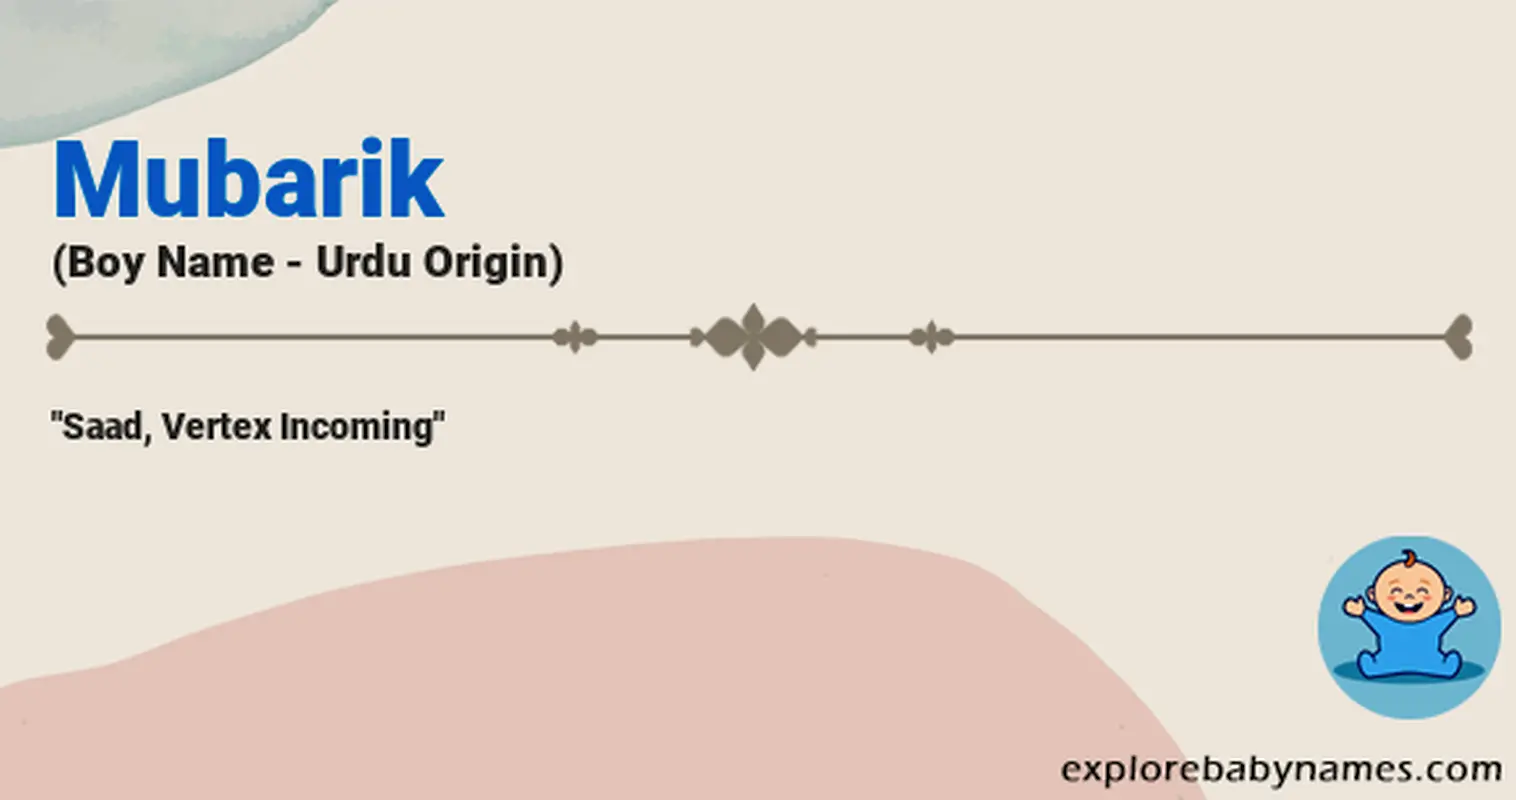 Meaning of Mubarik